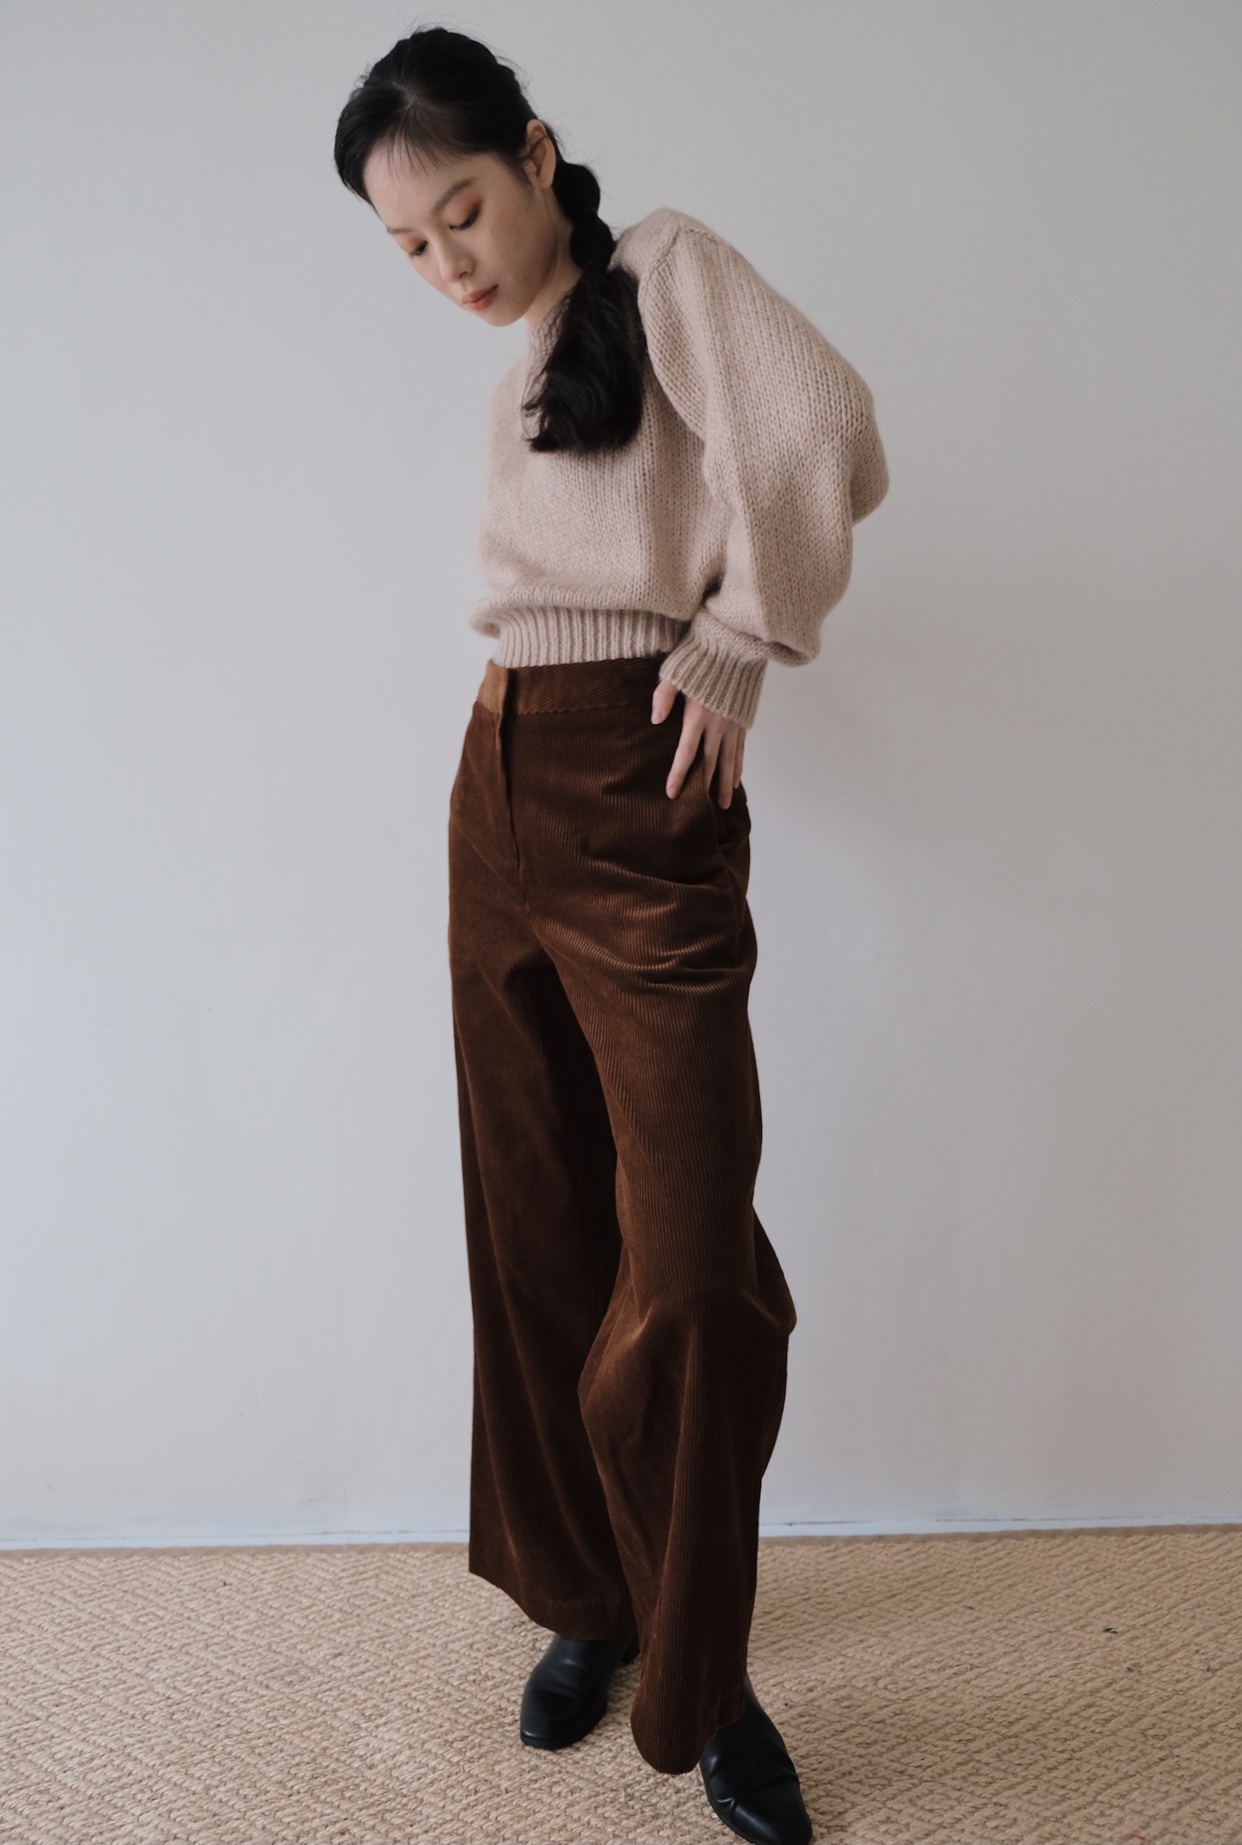 上質風合い LEINWANDE 輝い alpaca 独創的 pants レディース